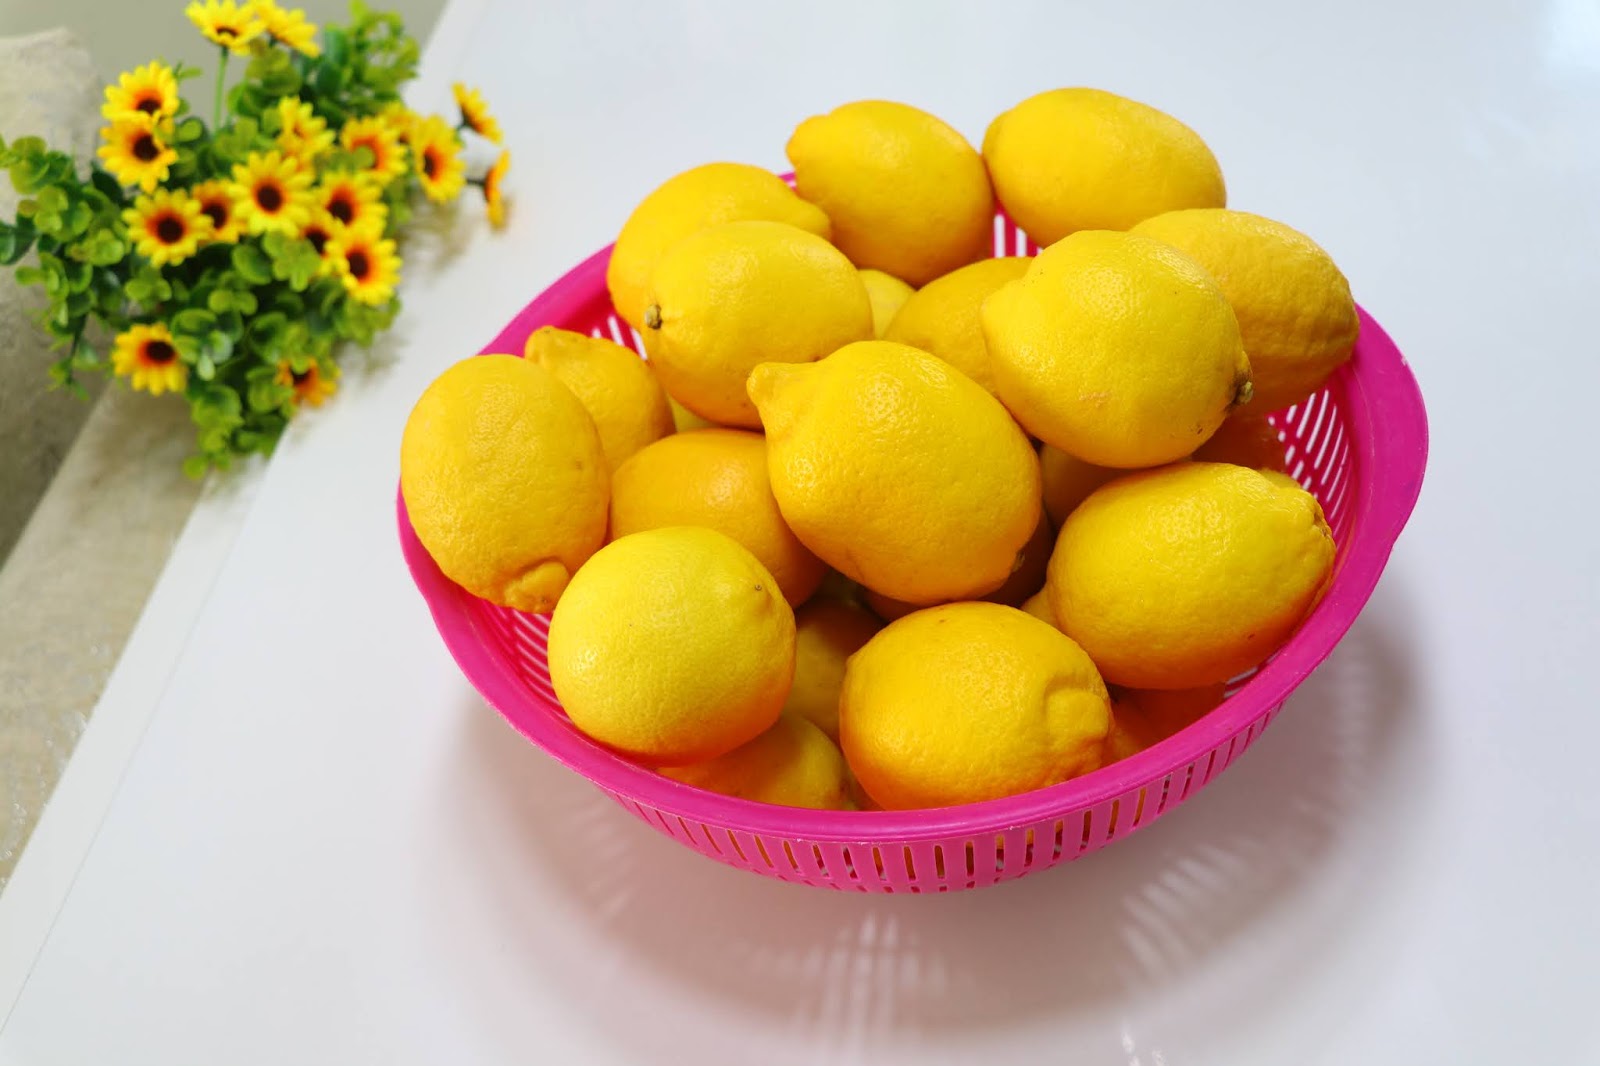 أسرار تجار الليمون.. ملعقة واحدة لتخزين الليمون من السنه للسنه بدون تغير في اللون أو الطعم